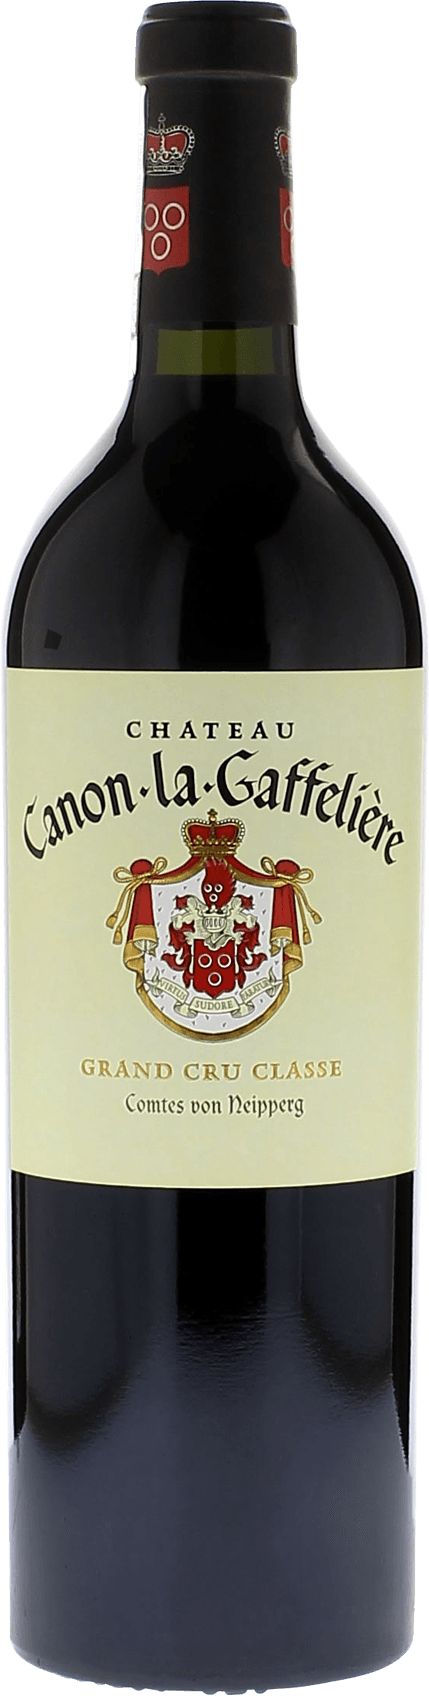 Canon la gaffeliere 2018 1er Grand cru class Saint-Emilion, Bordeaux rouge